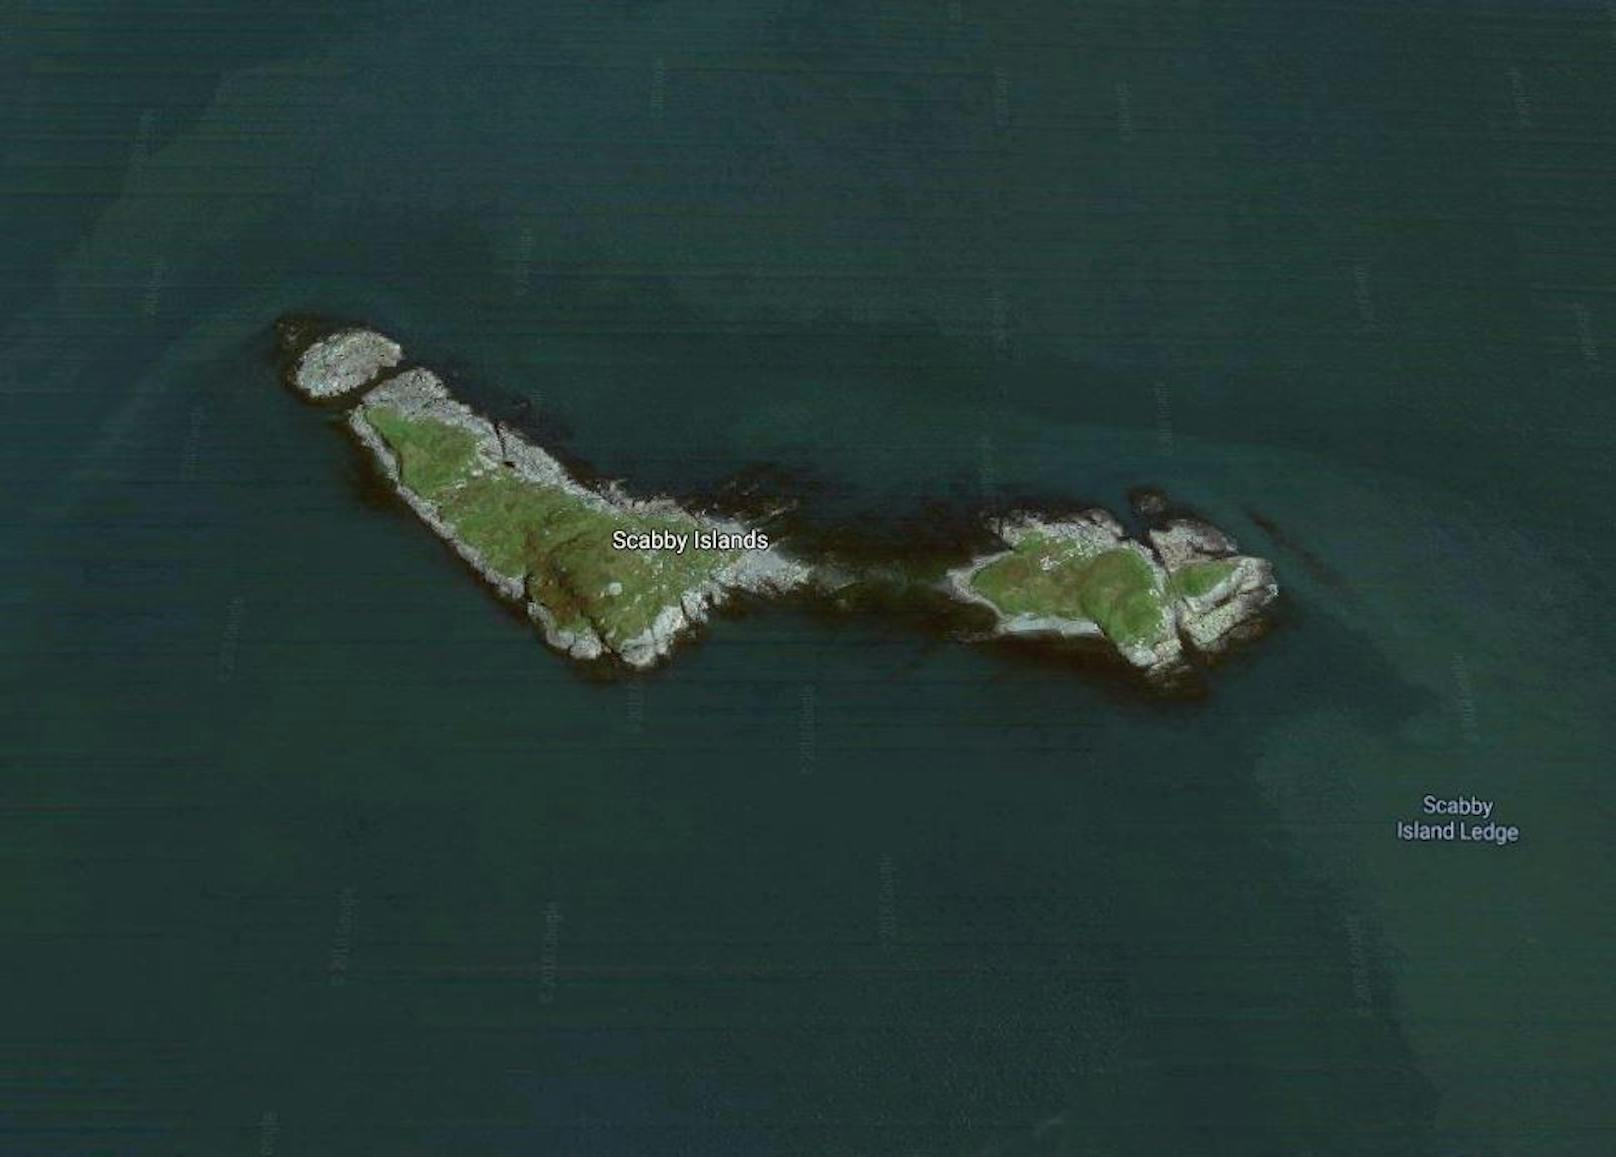 <b>Scabby Island Chain, Maine, Amerika</b>
Wieder kühlere Gefilde erwarten Sie auf der Scabby Island Chain. Mit mehr als 72.000 Quadratmetern ist sie eine der grösseren Inseln in dieser Aufzählung.